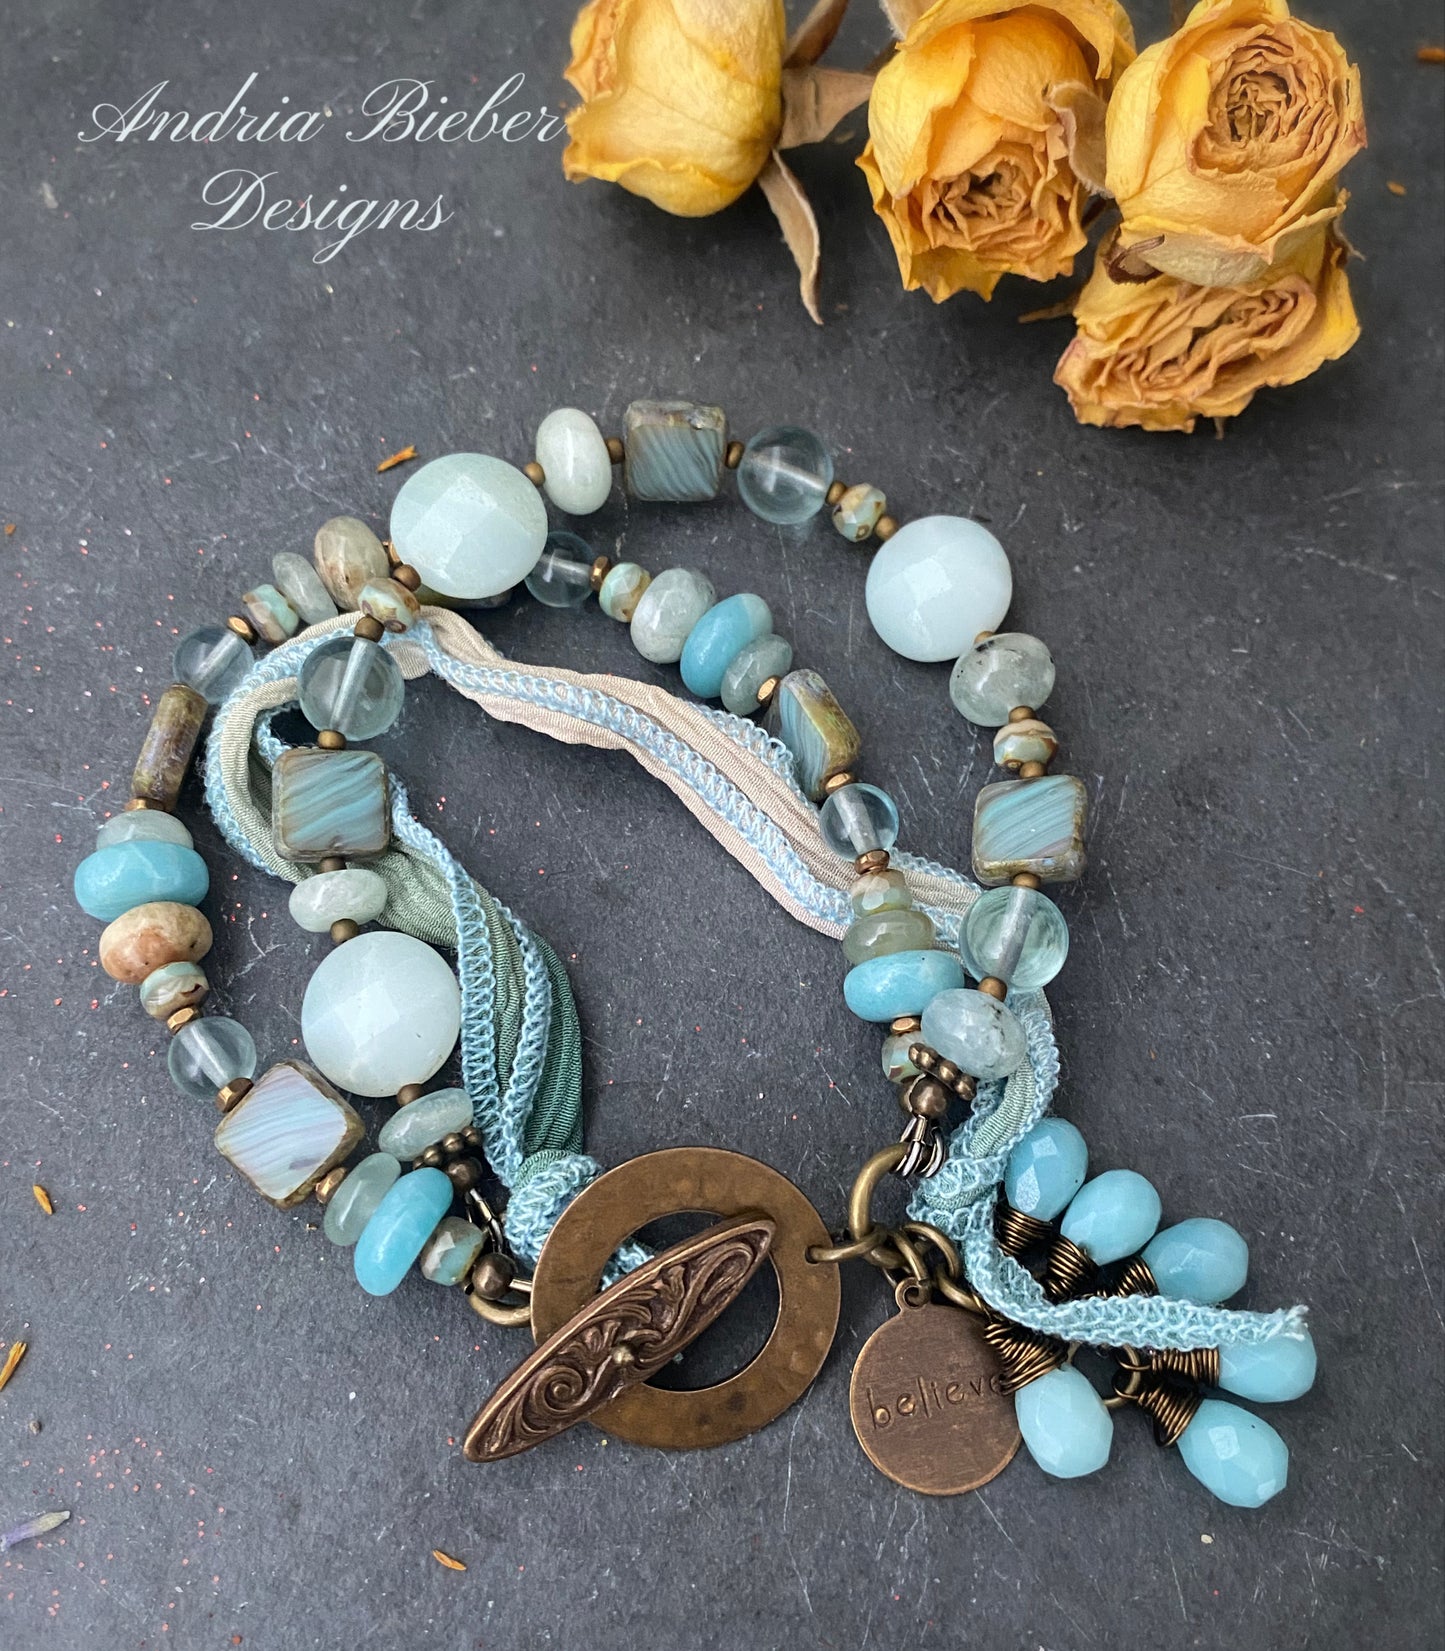 Aquamarine, blue stone, Czech glass, ribbon, bronze metal, bracelet, jewelry